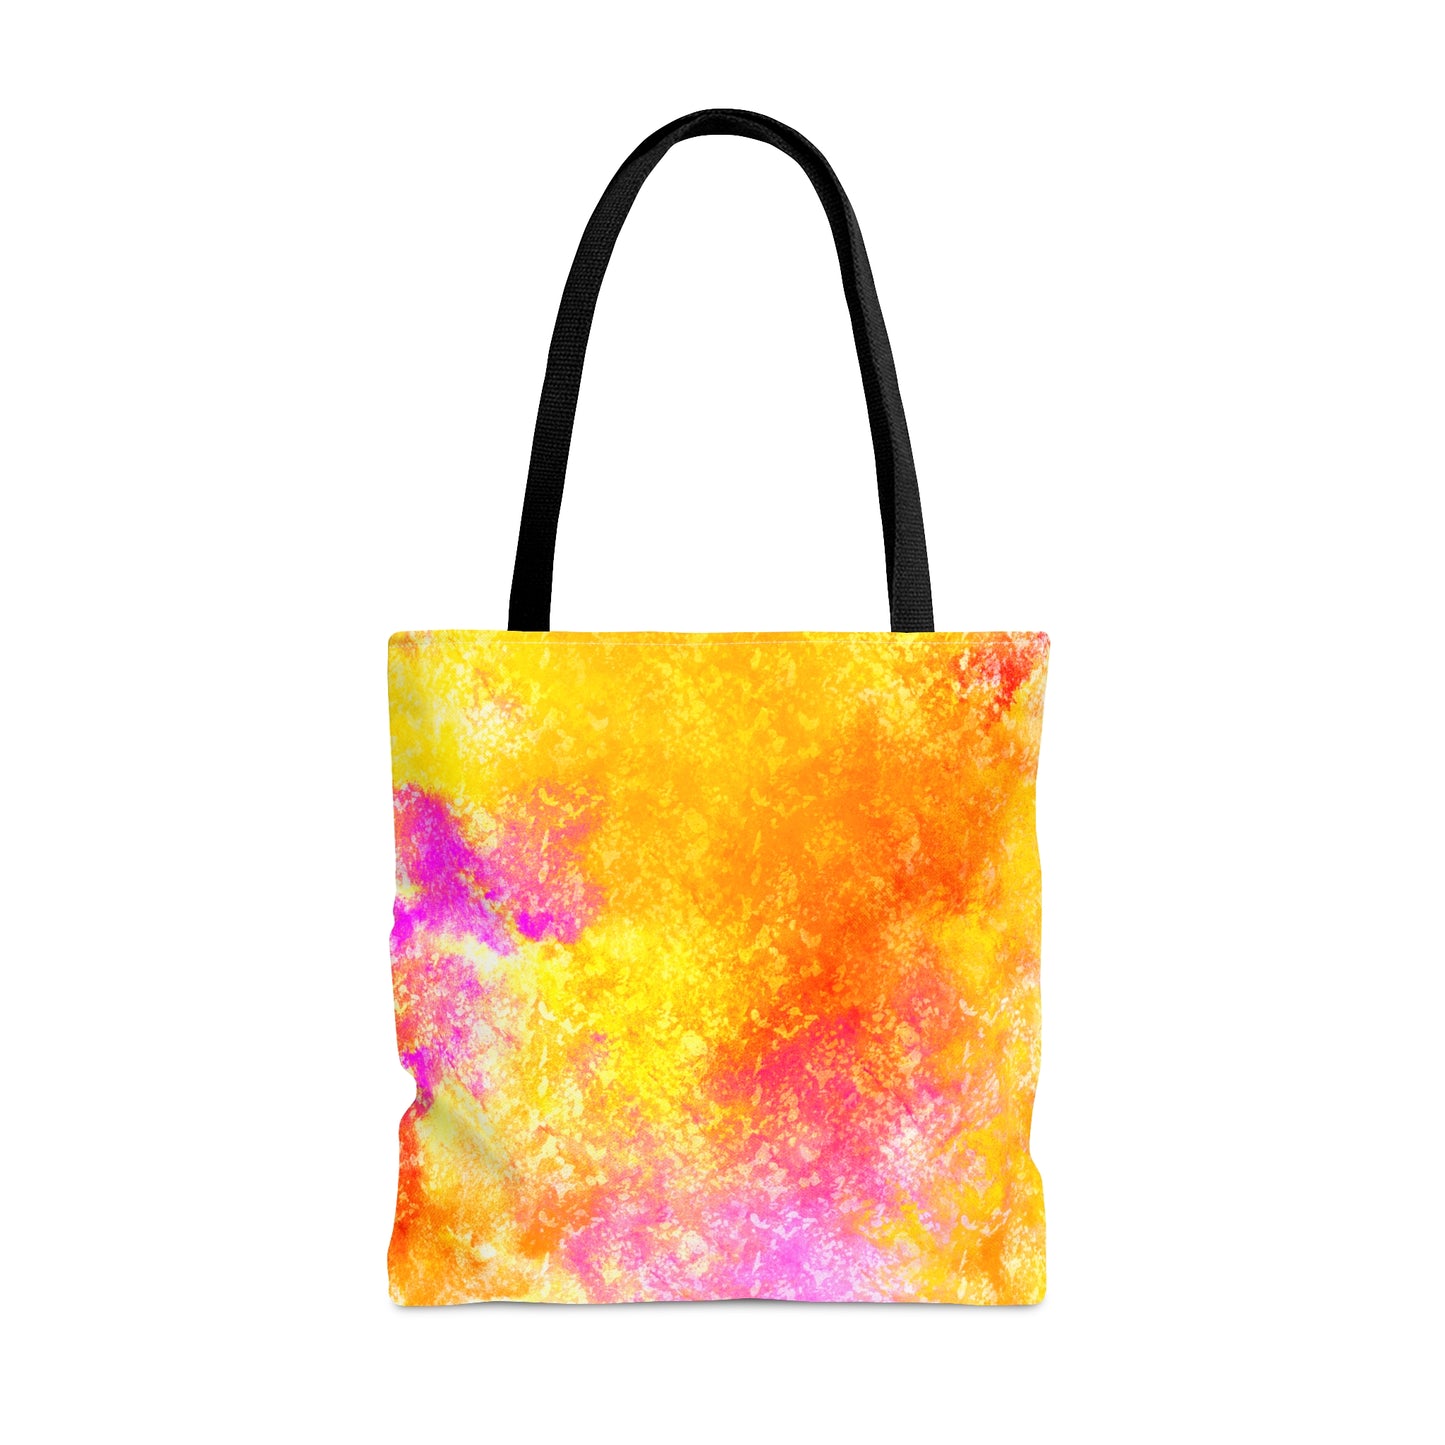 Splash of Color Tote Bag